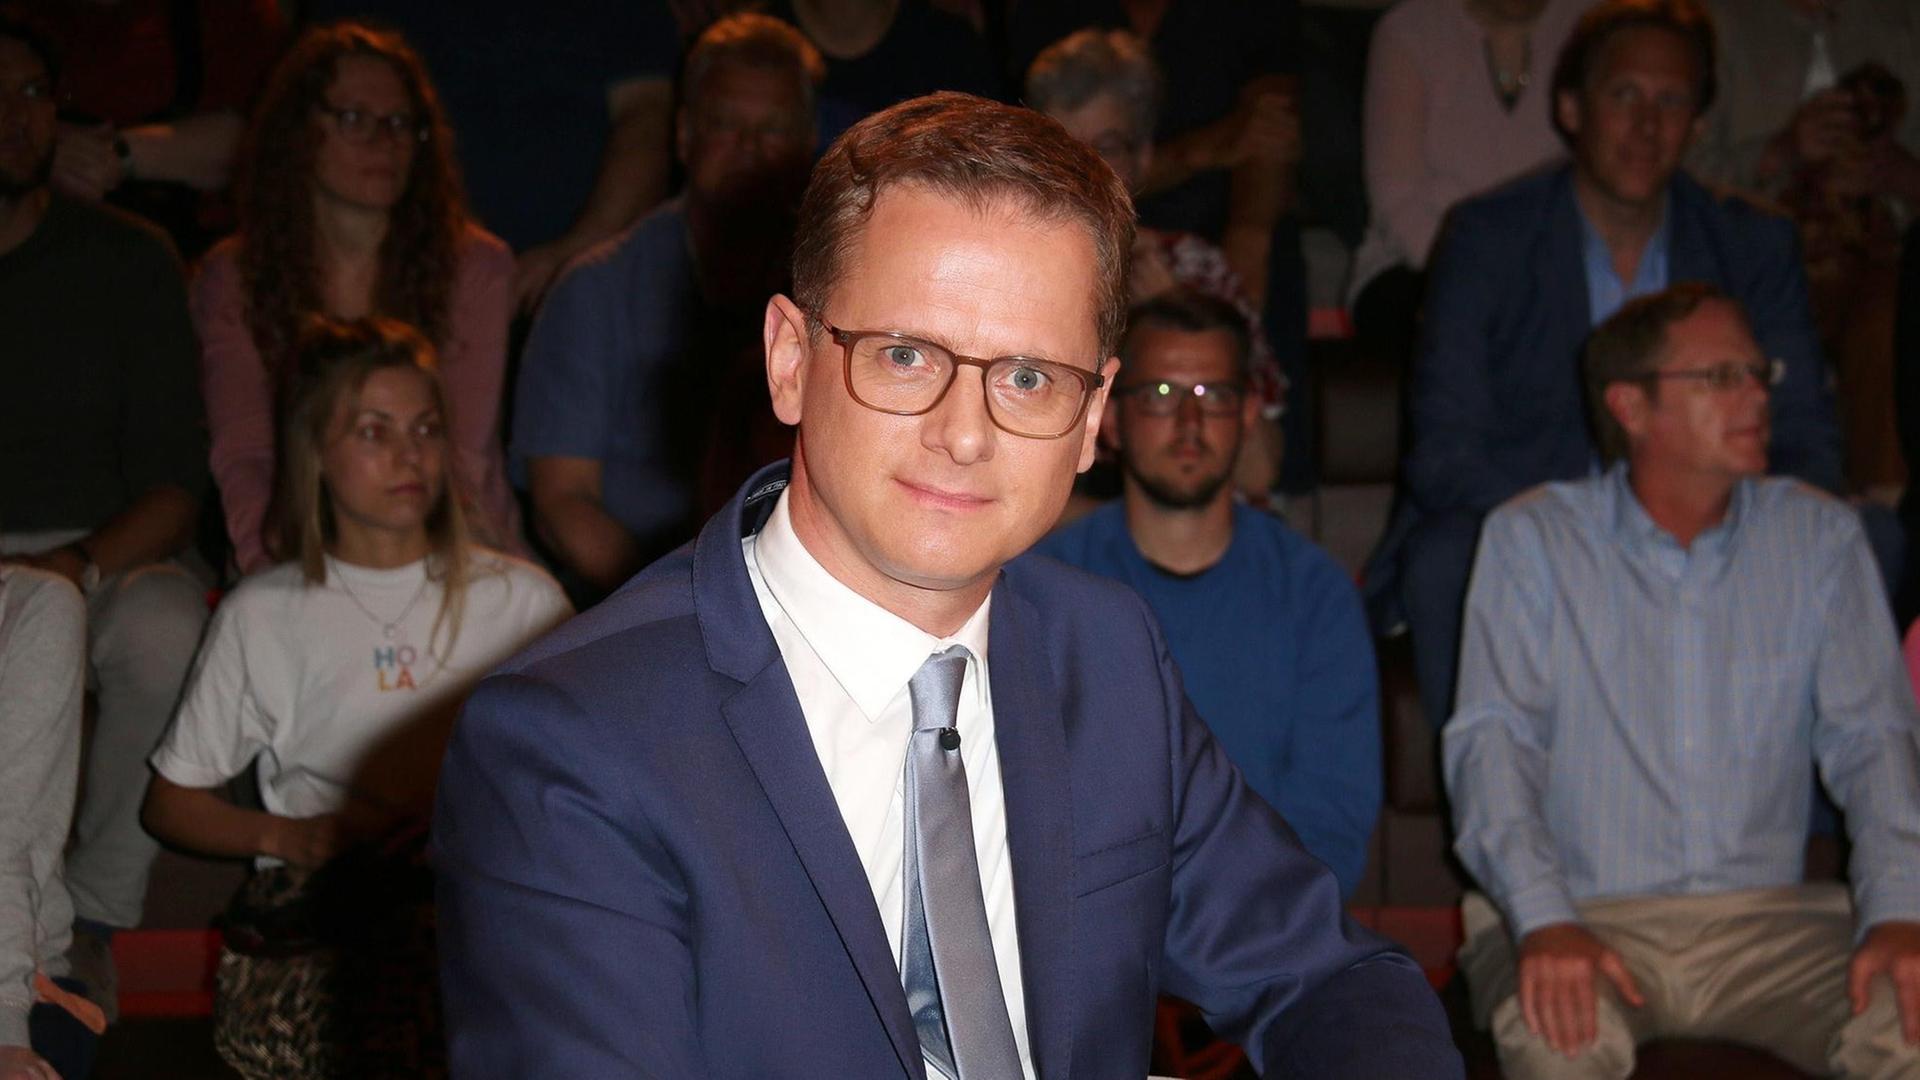 Carsten Linnemann zu Gast in der "Markus Lanz" (ZDF) Talkshow am 11.06.2018 in Hamburg